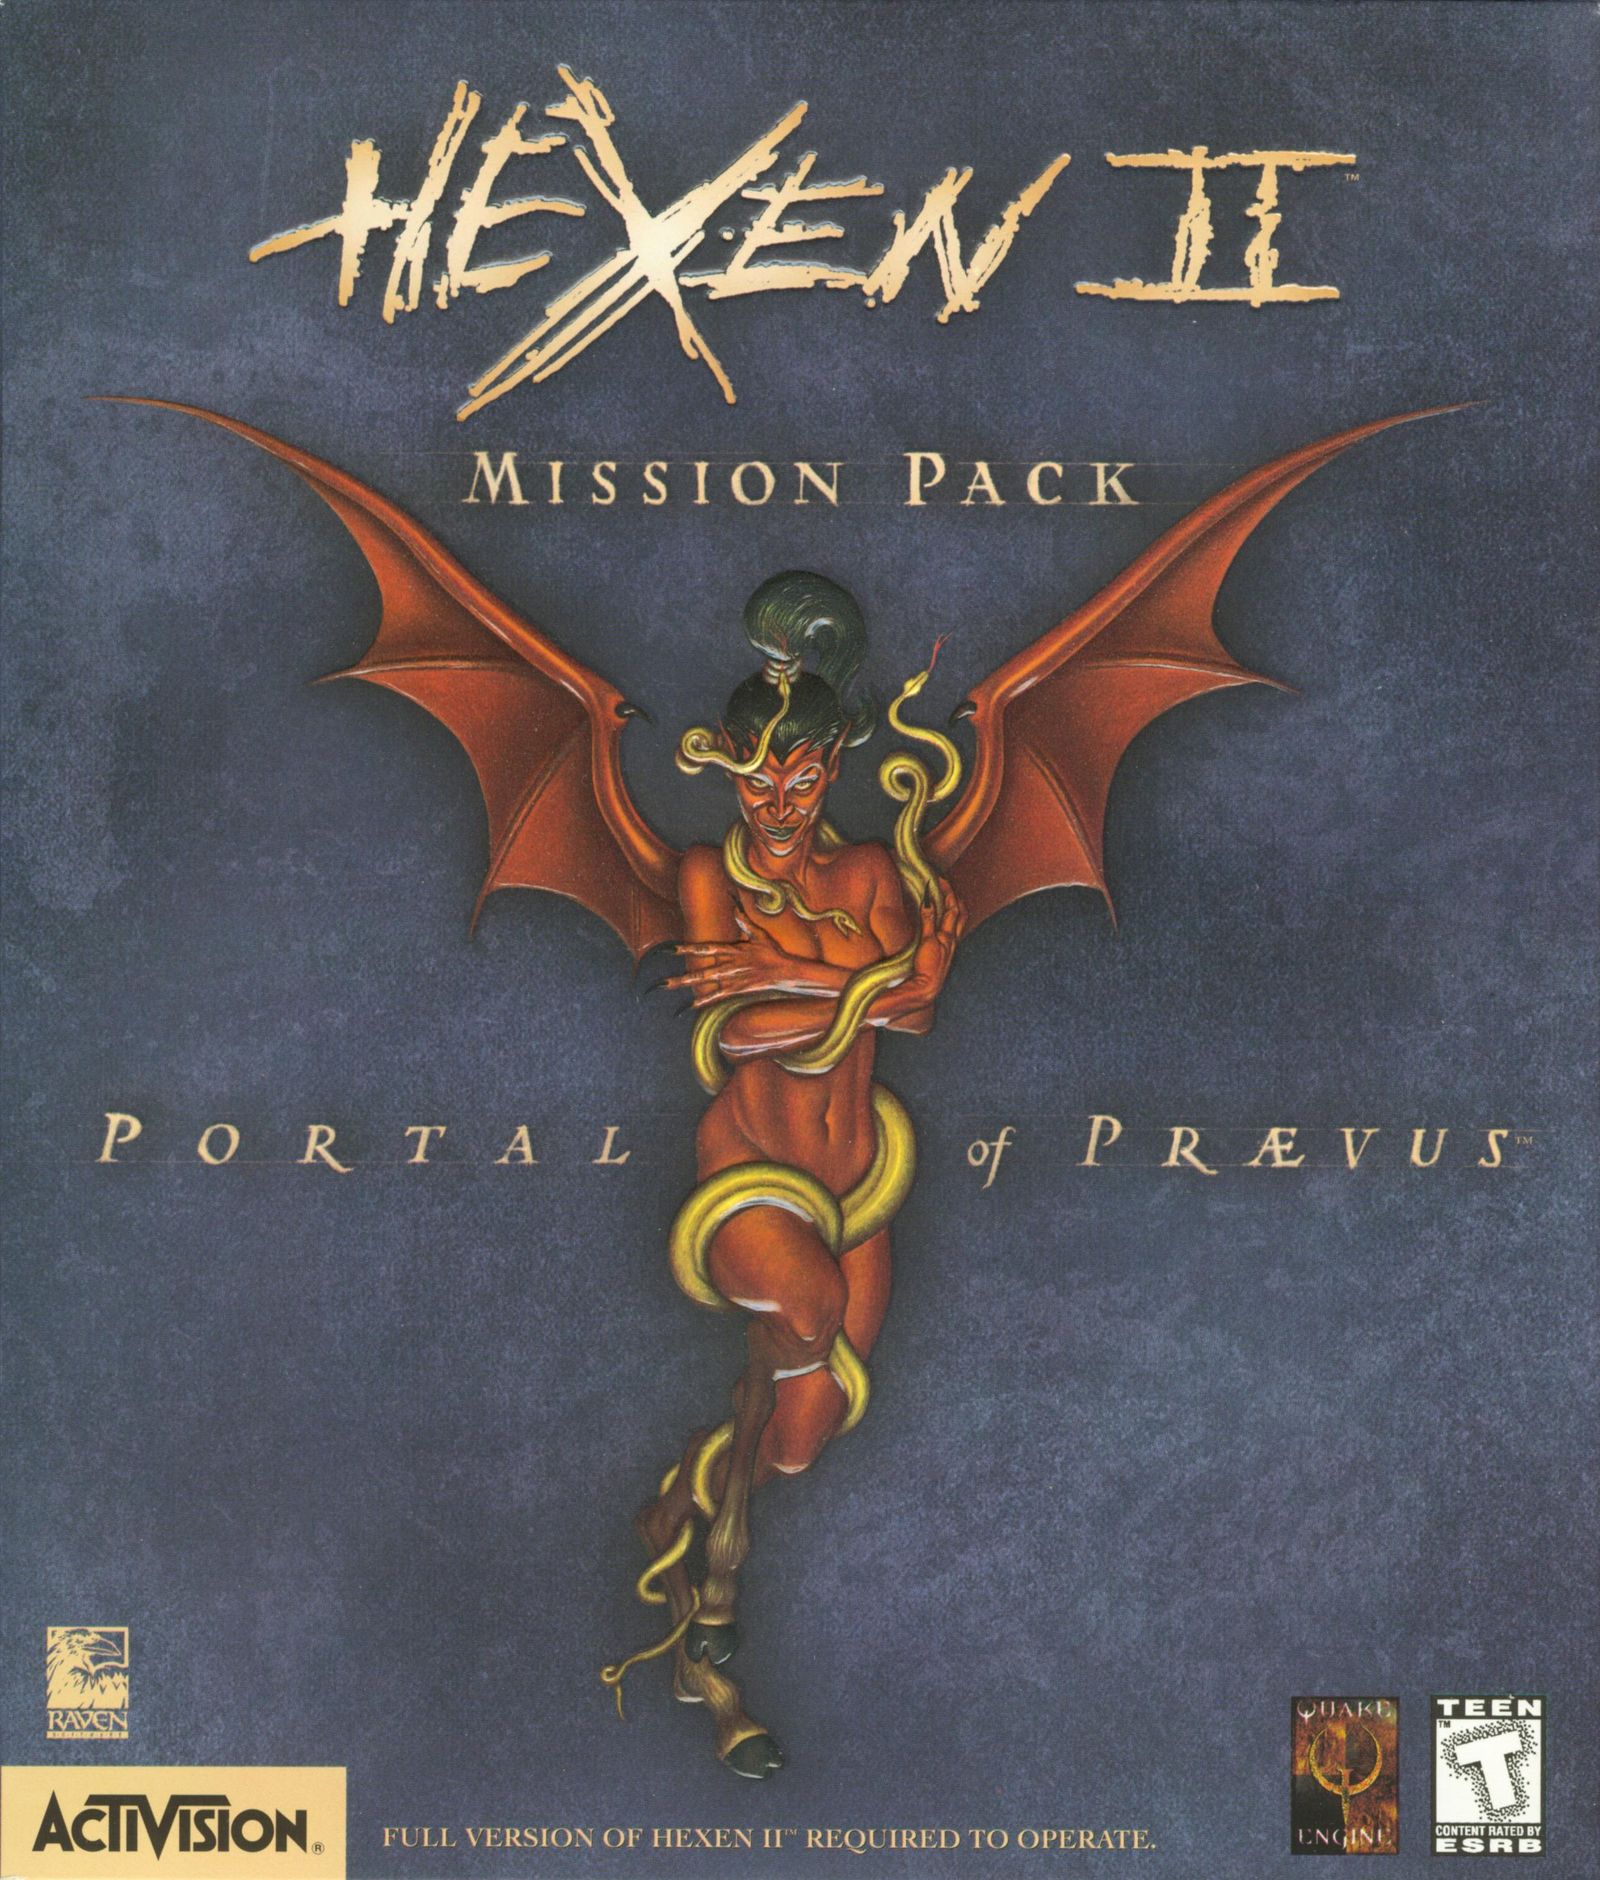 Hexen 2 mission pack portal of praevus